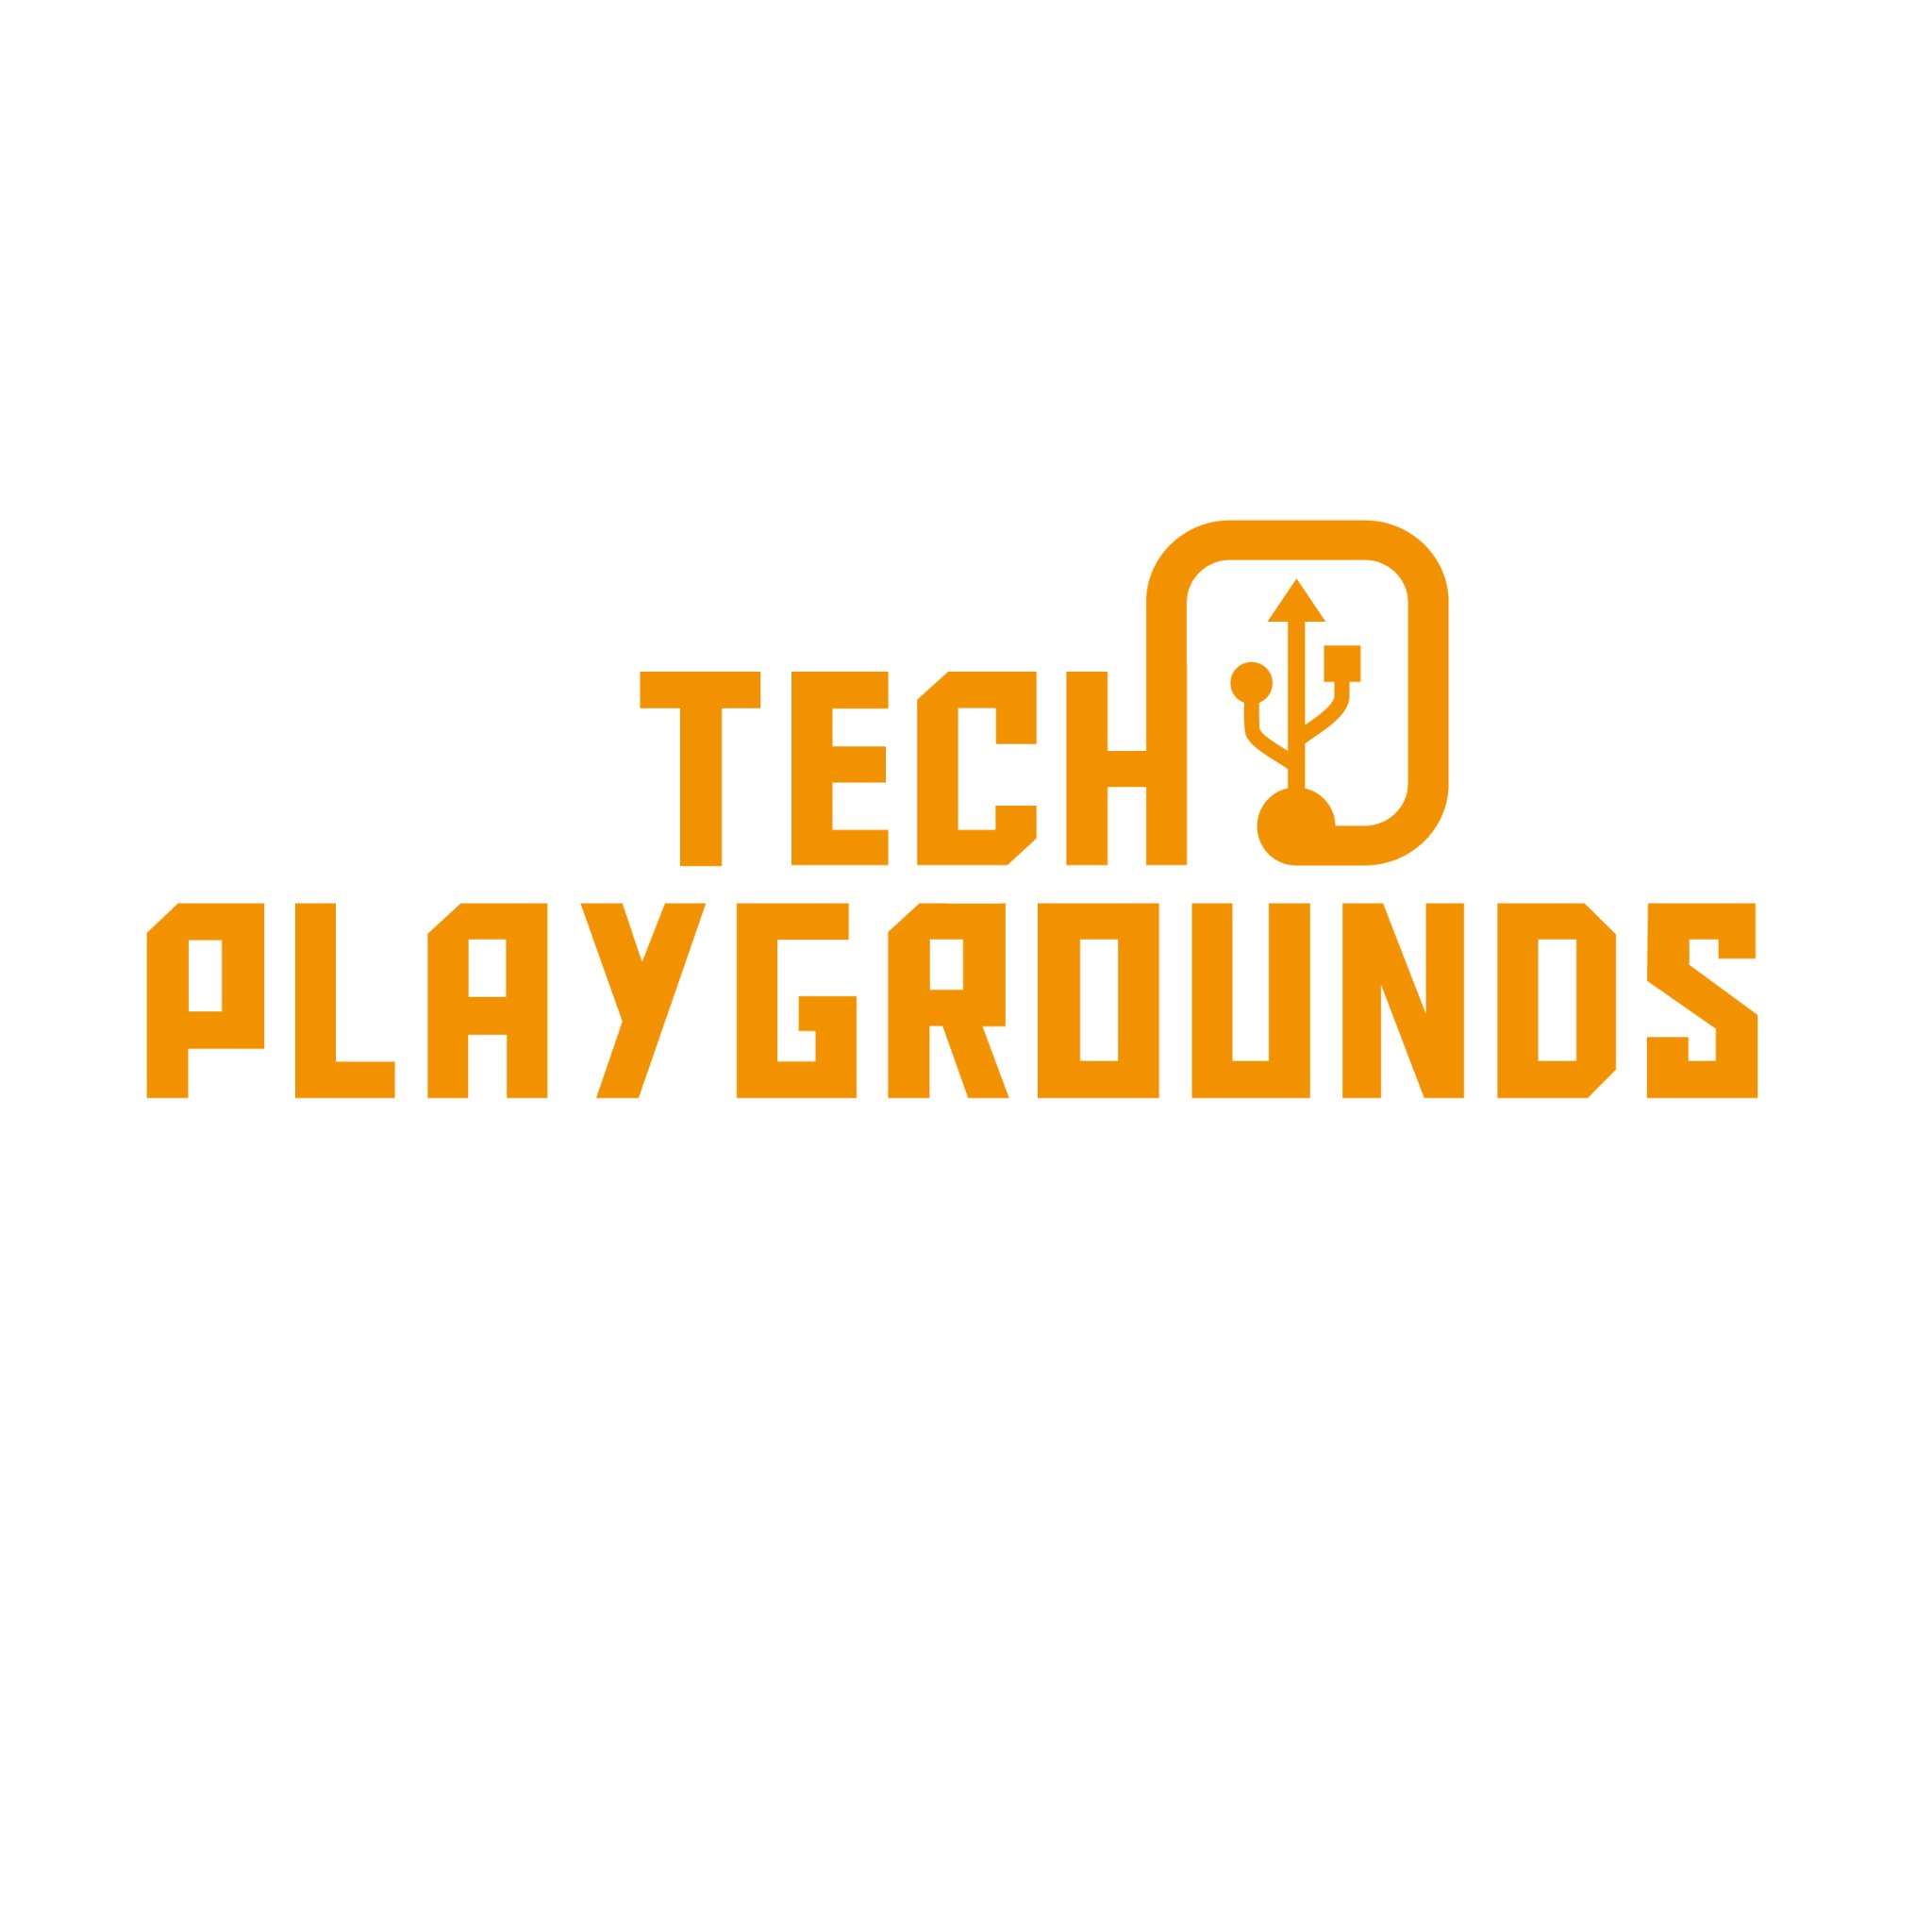 Tech Playgrounds zijn werkplaatsen in regio Eindhoven waar techies jaar naschools samen kunnen leren & inspireren . @dynamjeugdwerk host de community!